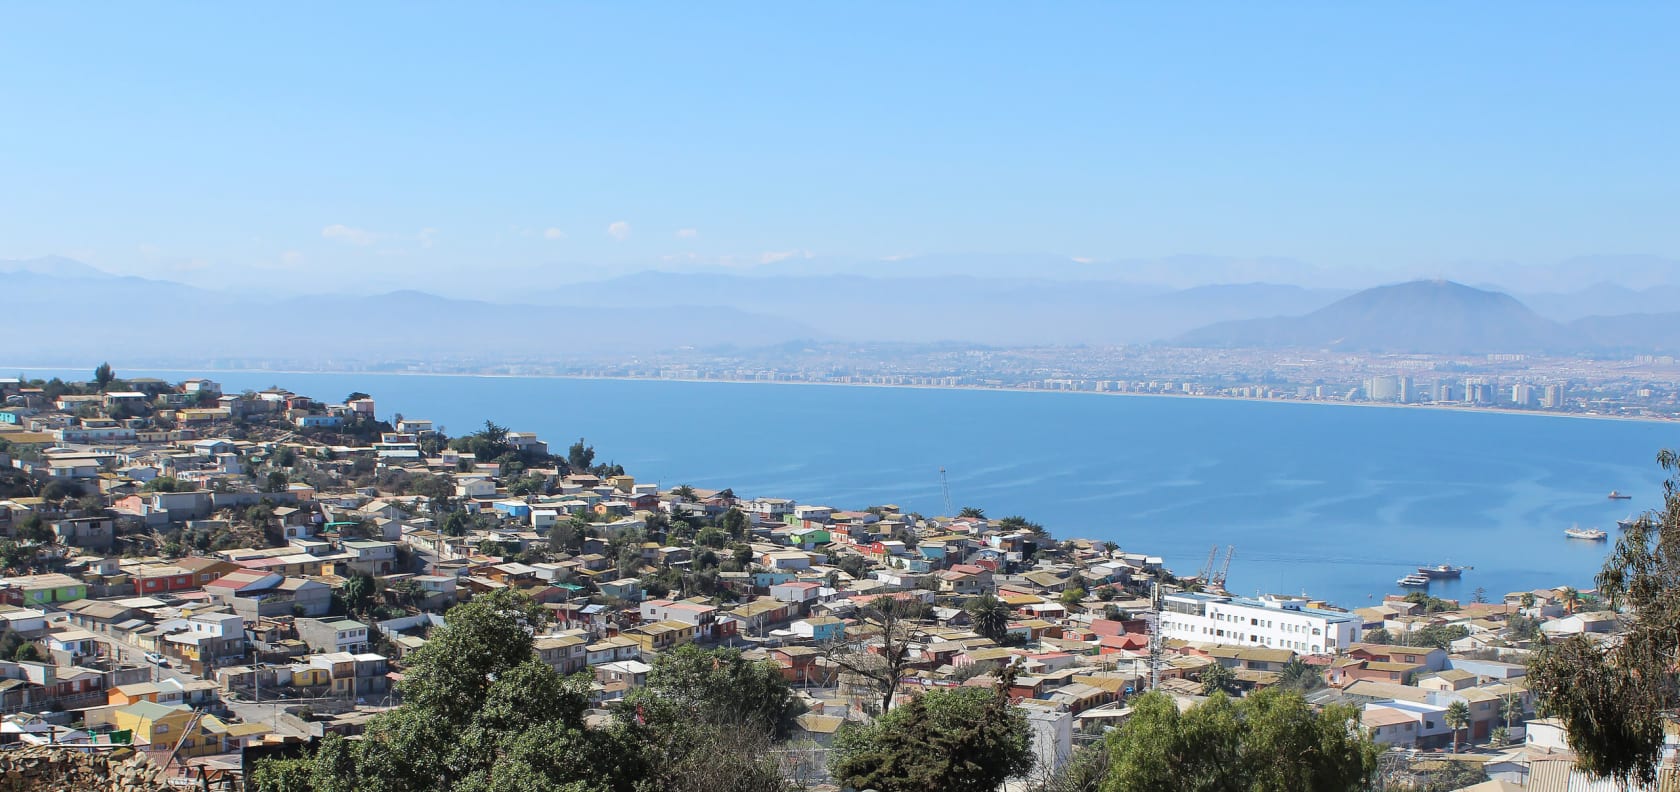 A cityscape in Chile.